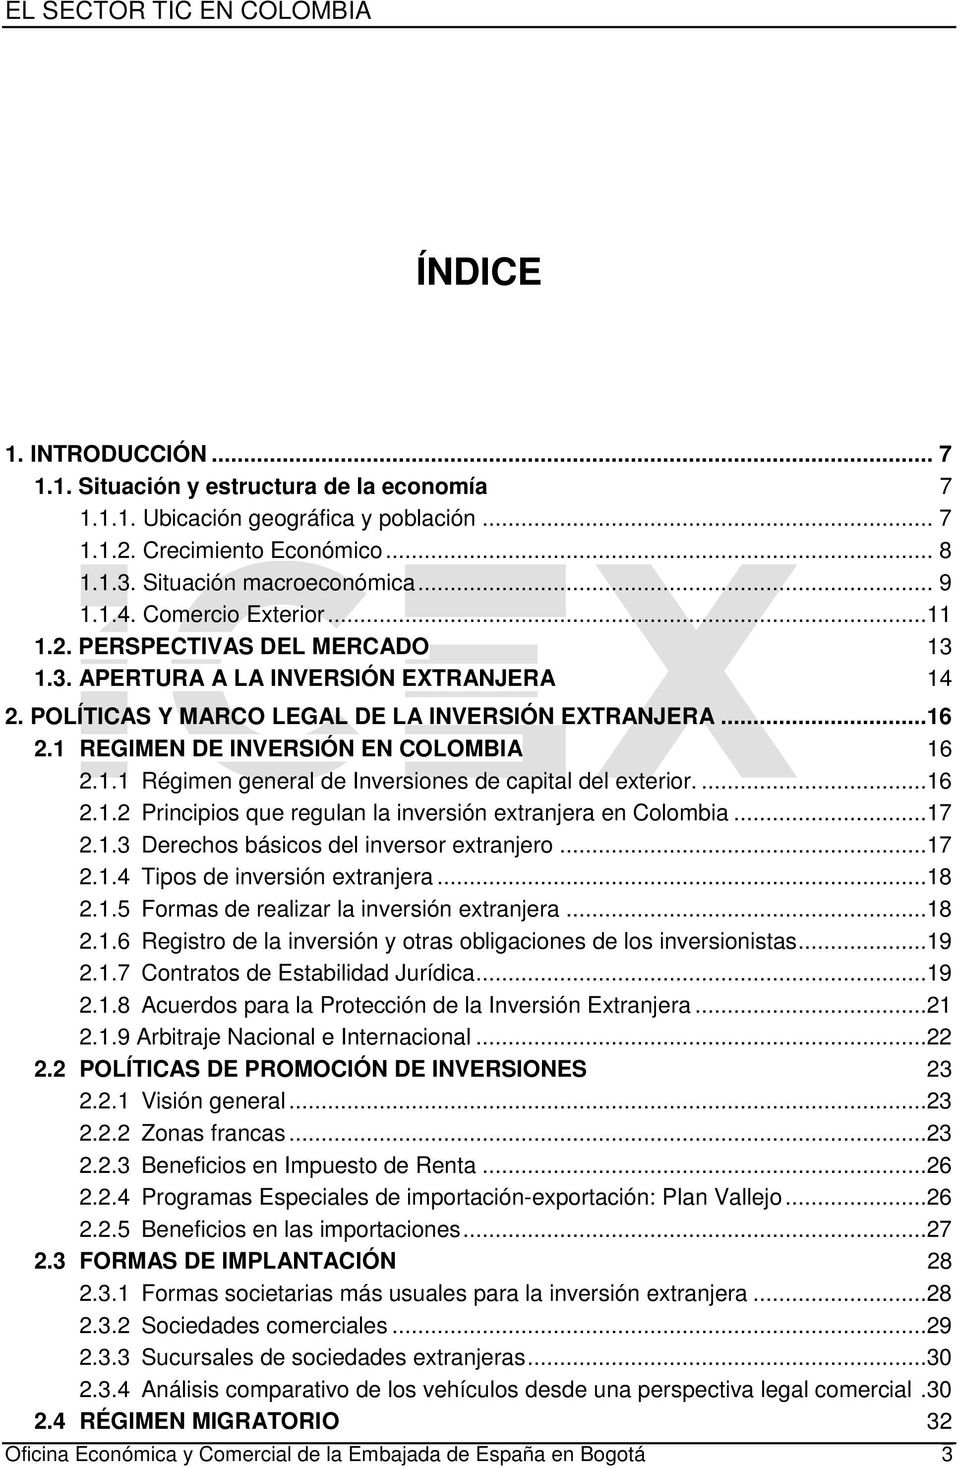 1.1 Régimen general de Inversiones de capital del exterior....16 2.1.2 Principios que regulan la inversión extranjera en Colombia...17 2.1.3 Derechos básicos del inversor extranjero...17 2.1.4 Tipos de inversión extranjera.